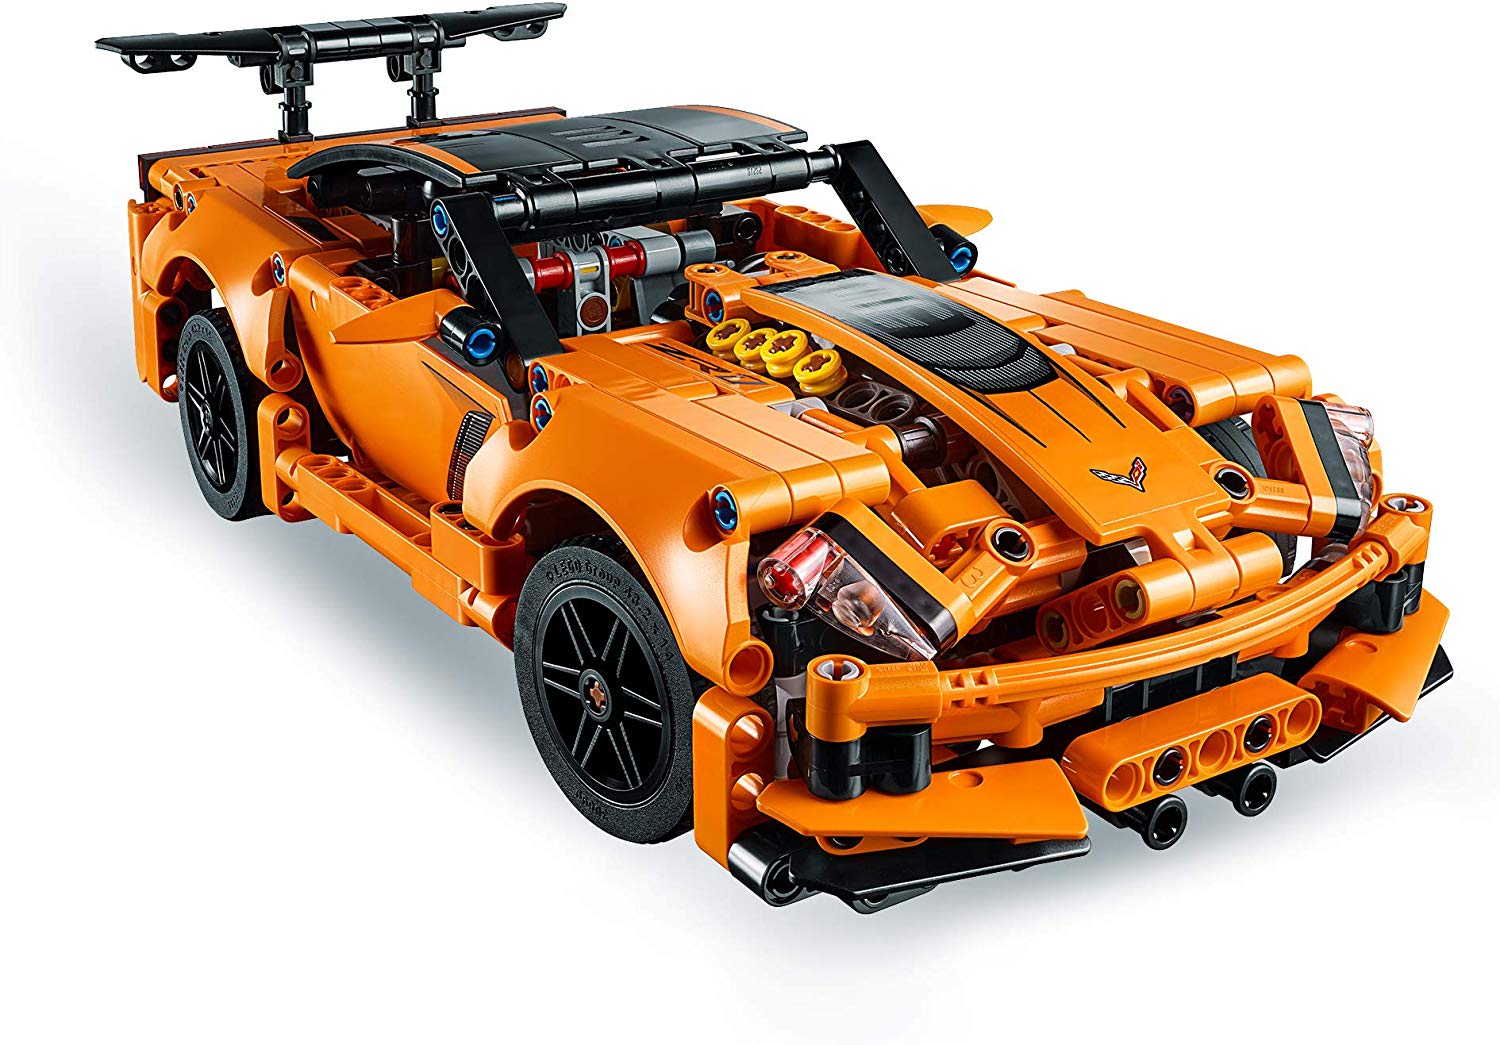 Lego Technic. Preliminary 2019 Super Car